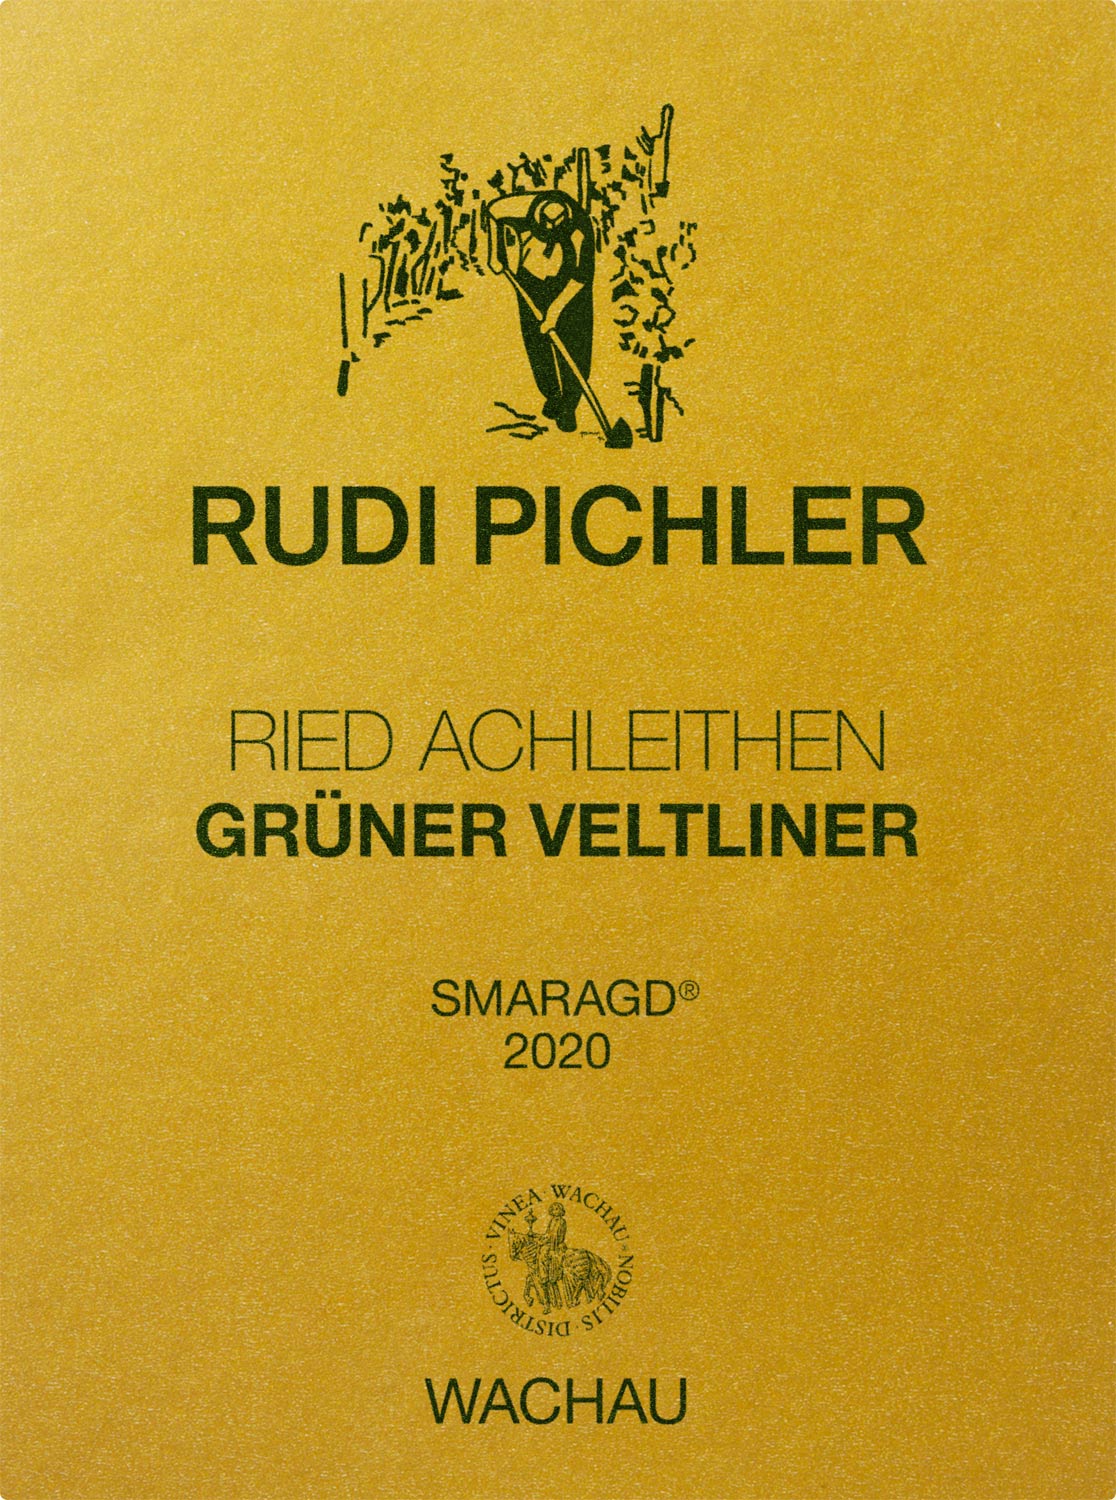 Rudi Pichler Grüner Veltliner Achleithen Smaragd 2020